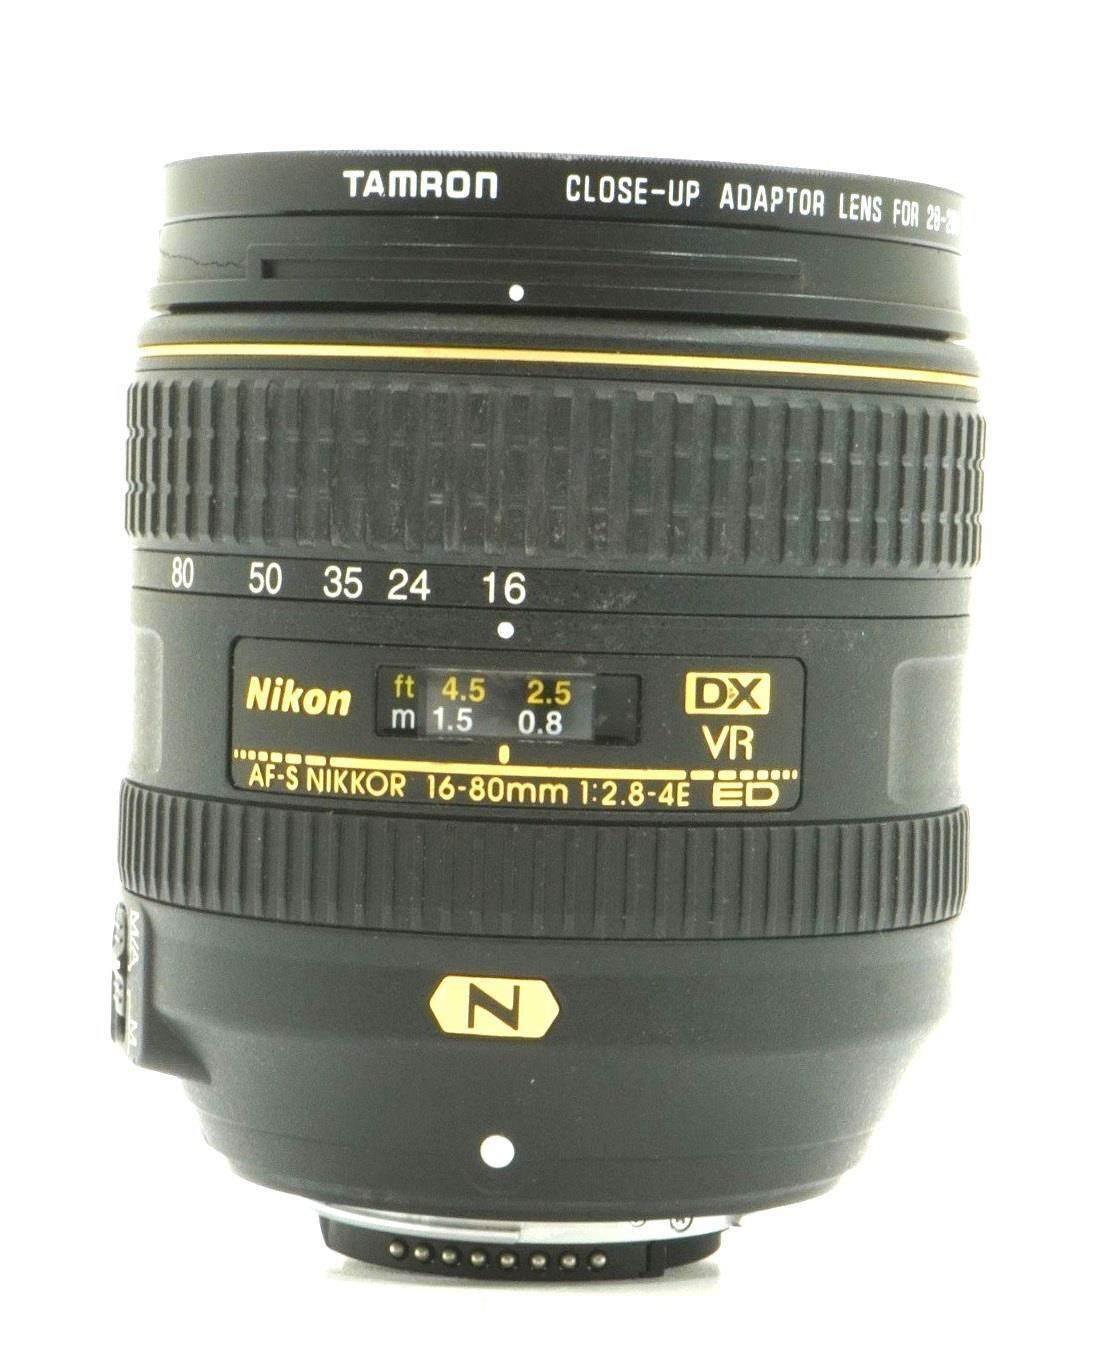 Nikon af-s dx nikkor 16-80mm f/2.8-4e ed vr lens - AS IS - Free